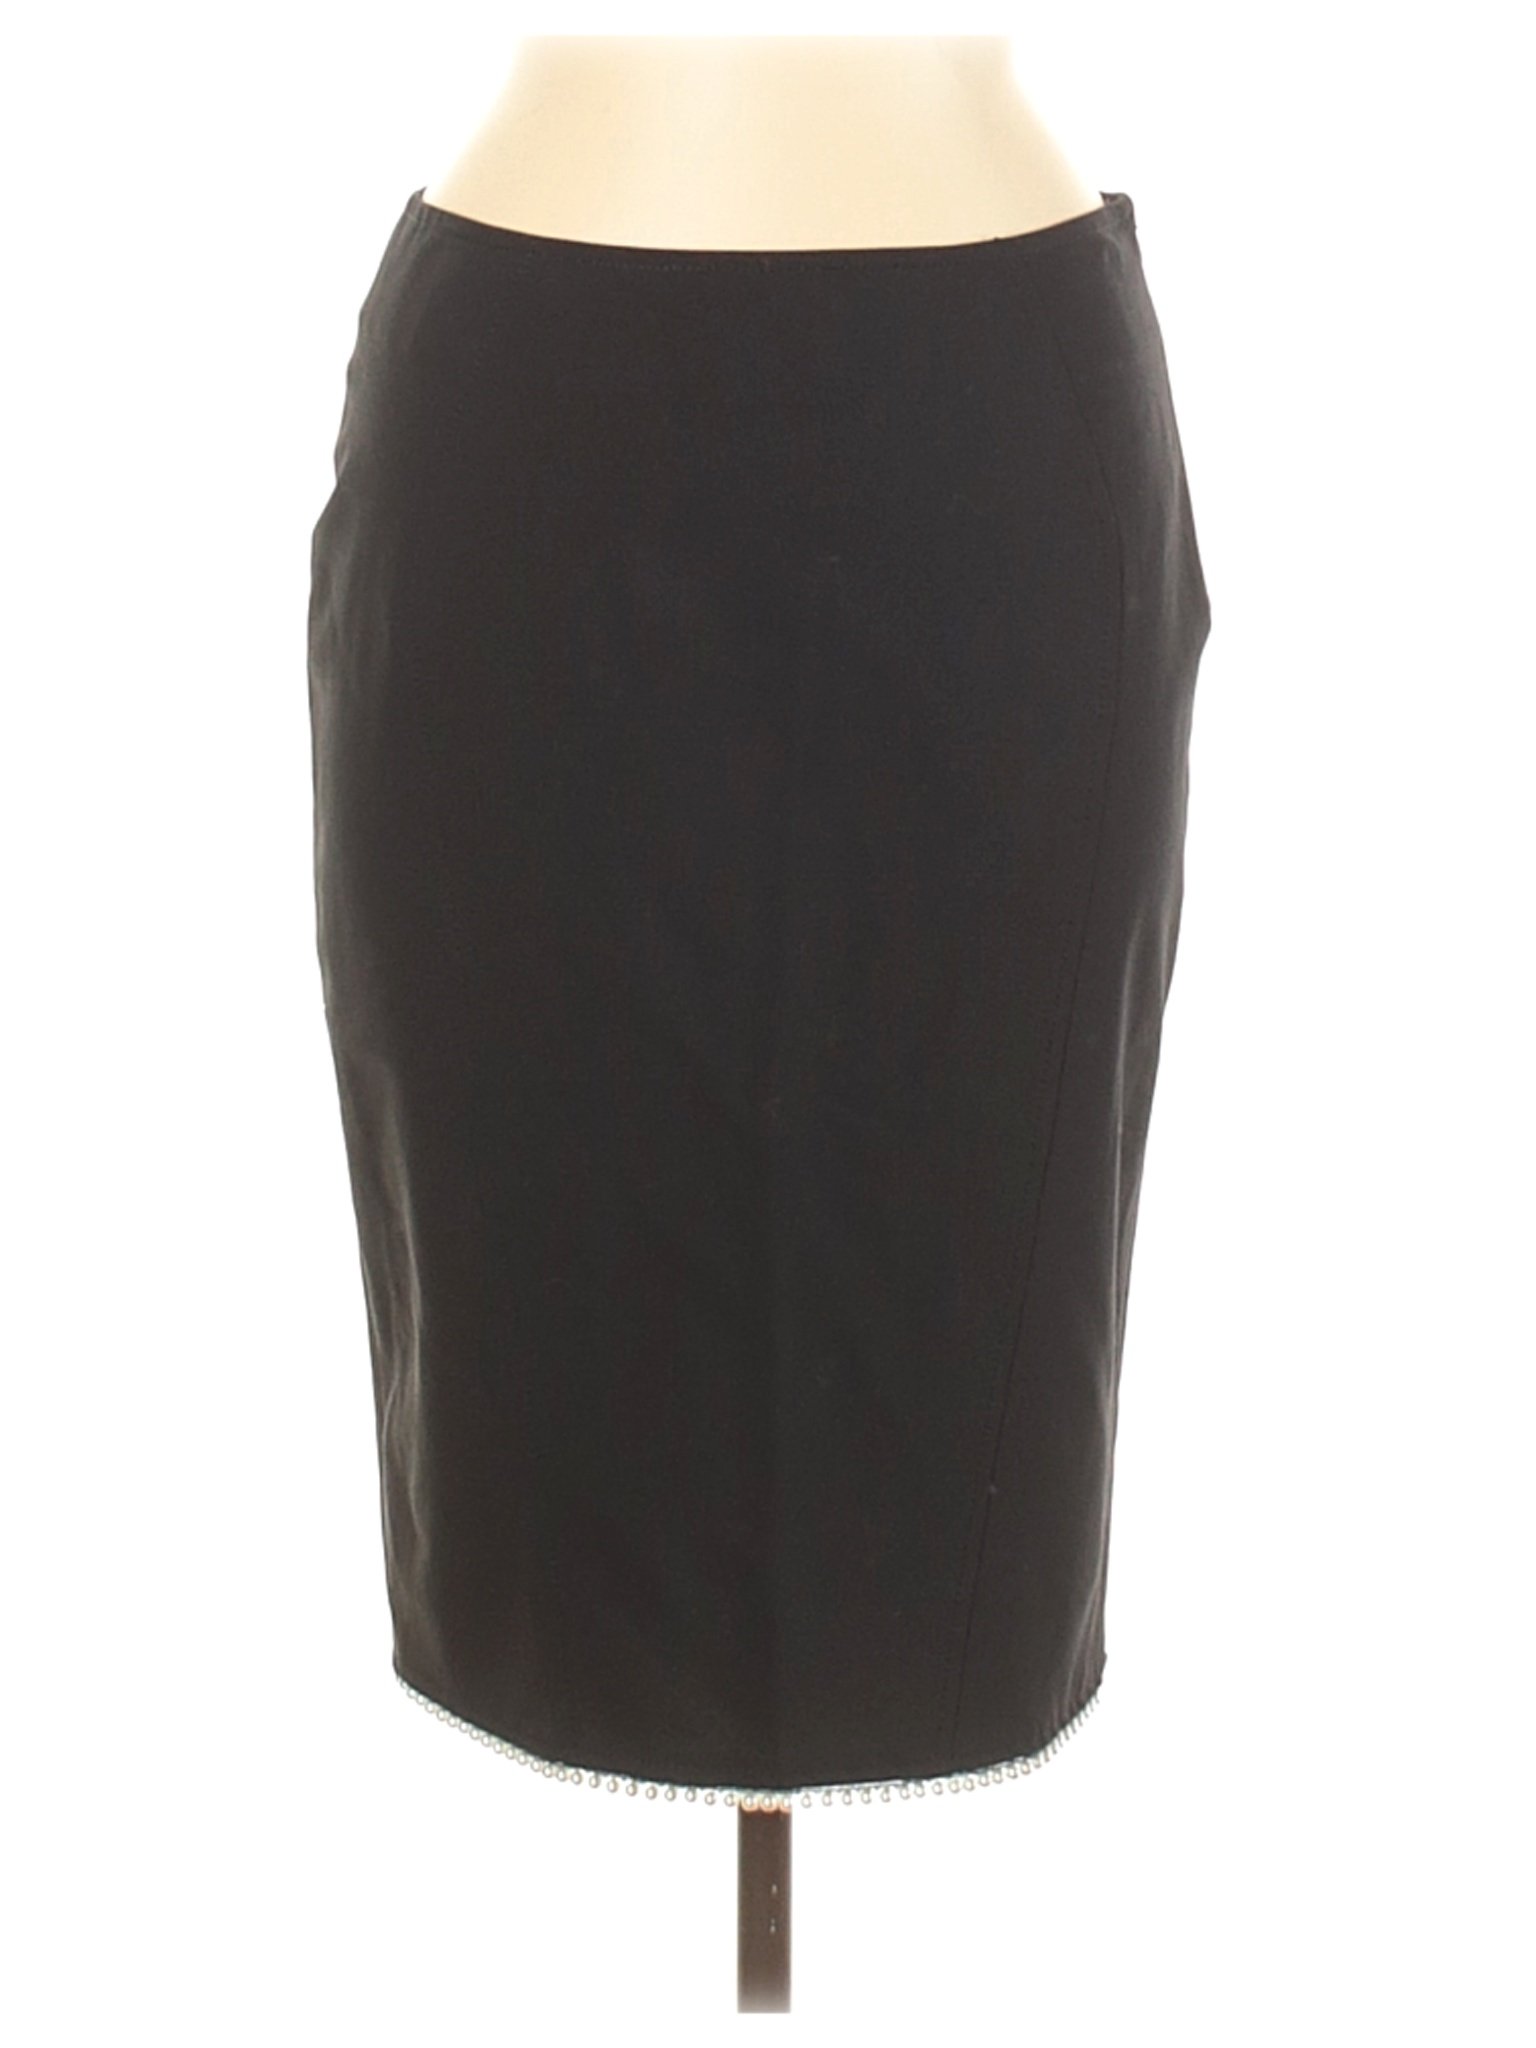 Blumarine Women Black Wool Skirt 42 italian | eBay